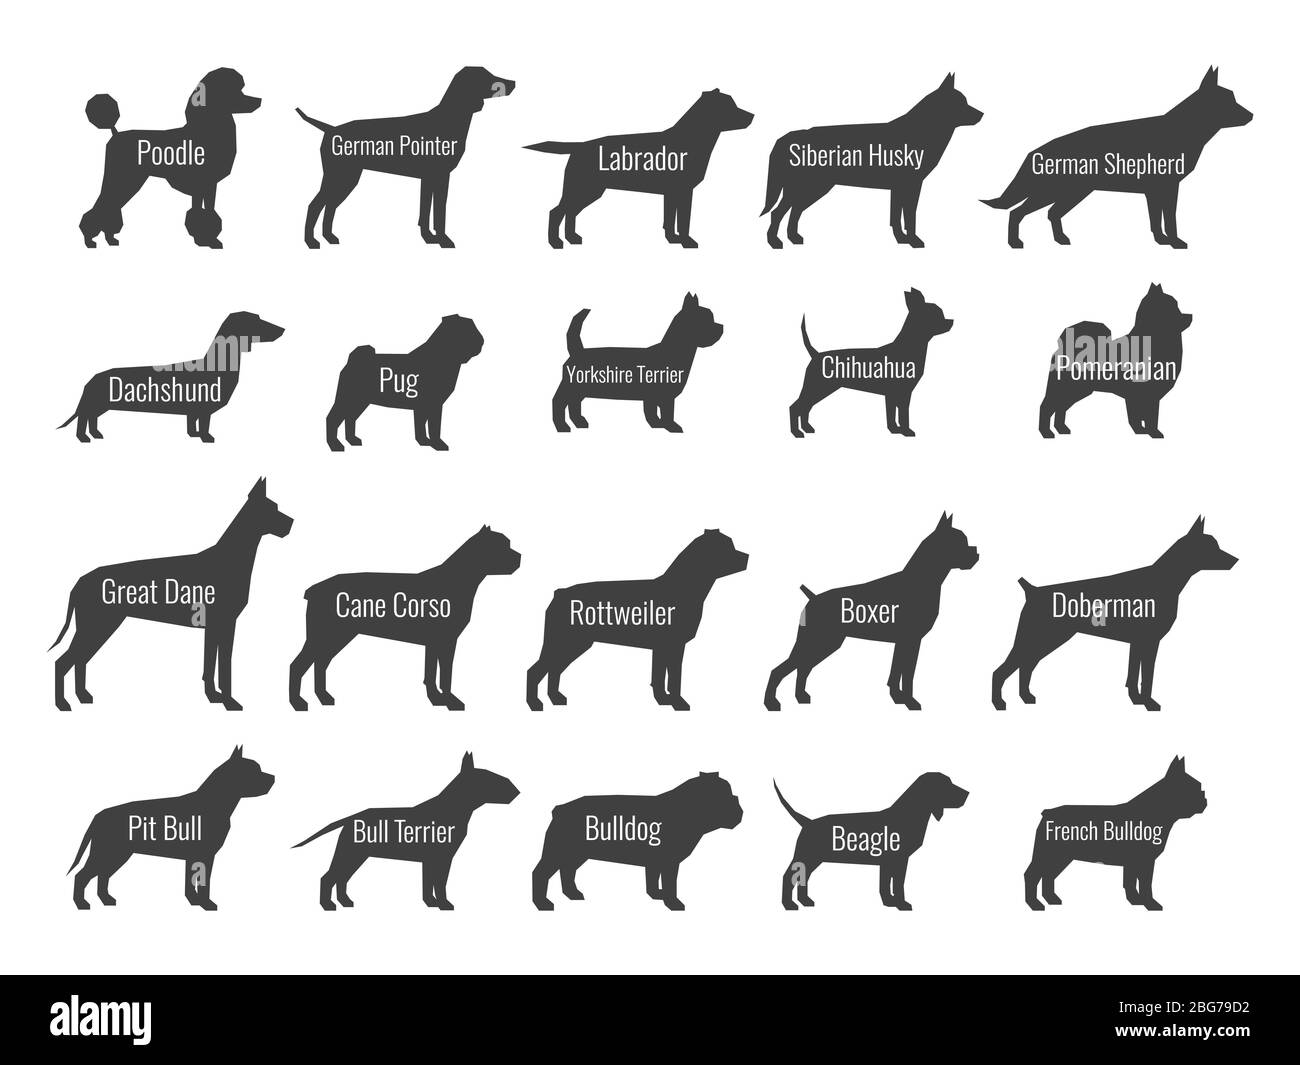 Schwarzer Hund Rassen Vektor Silhouetten isoliert auf weißem Hintergrund. Profil von Pudel und labrador, sibirischen Husky und Schäfer, Dackel und Mops illus Stock Vektor